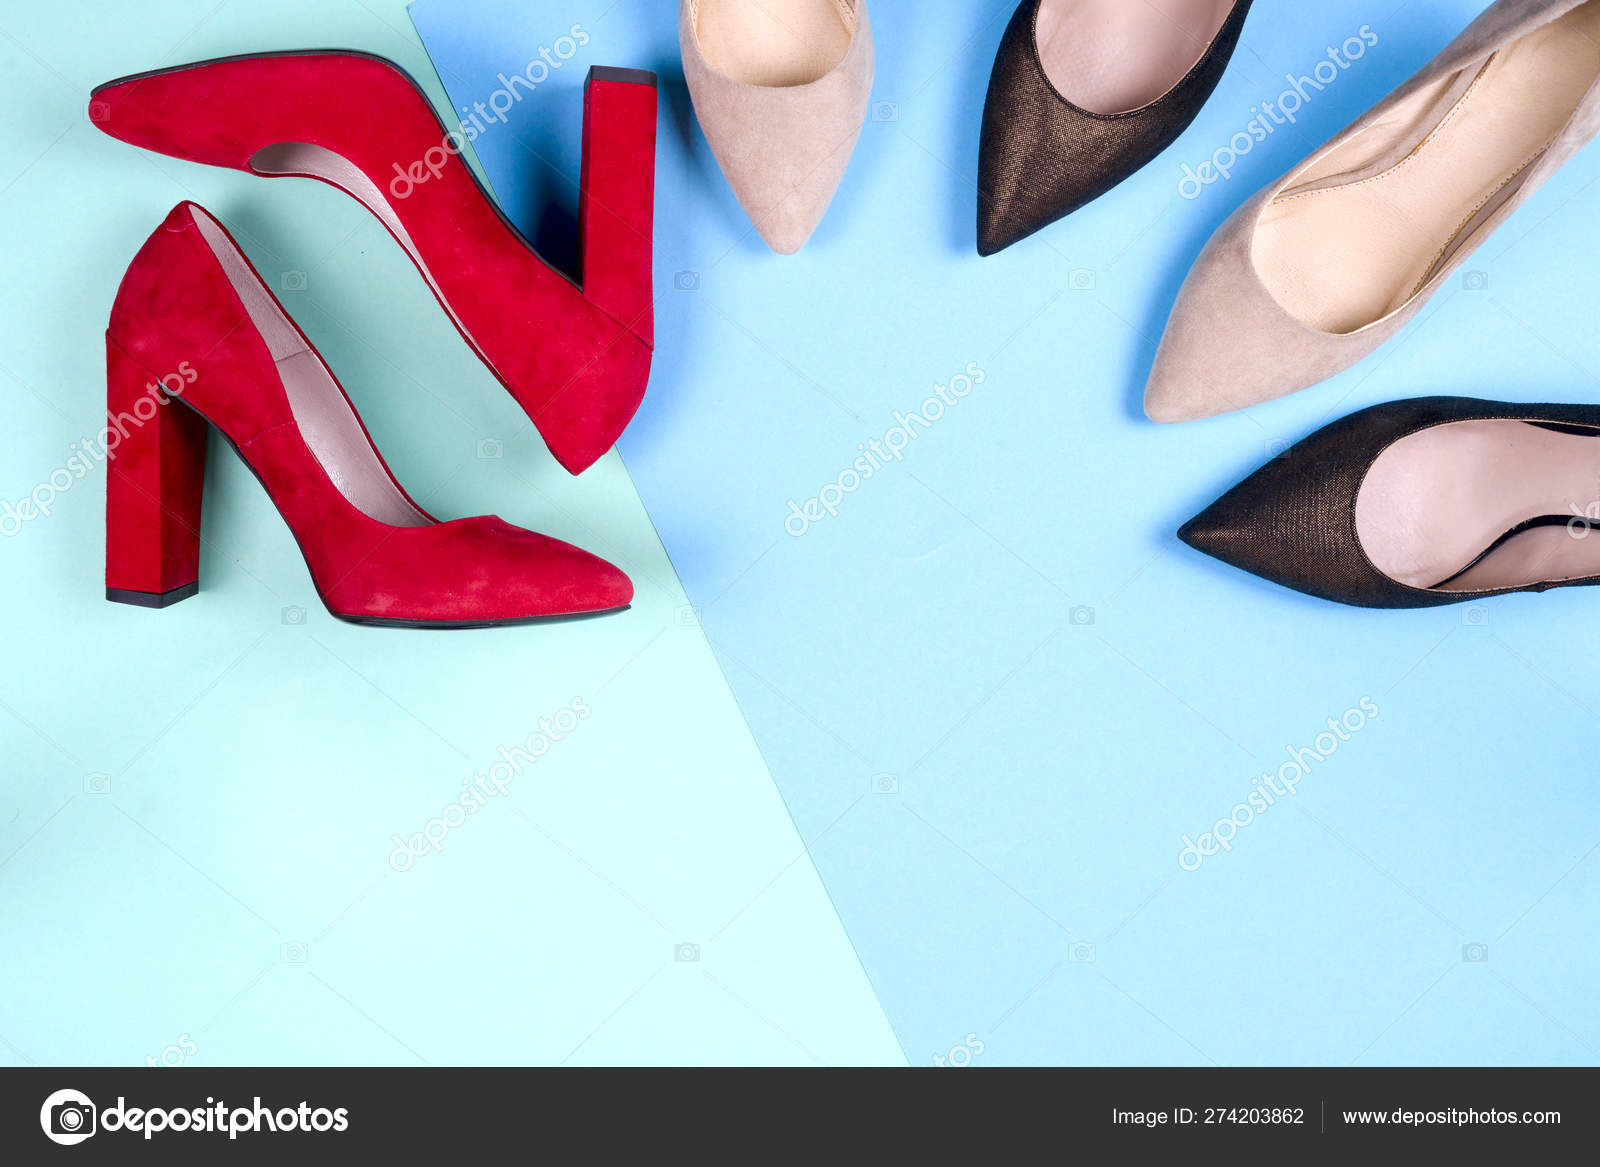 Fashion, kvindelige forskellige på høje hæle — Stock-foto vtmila #274203862